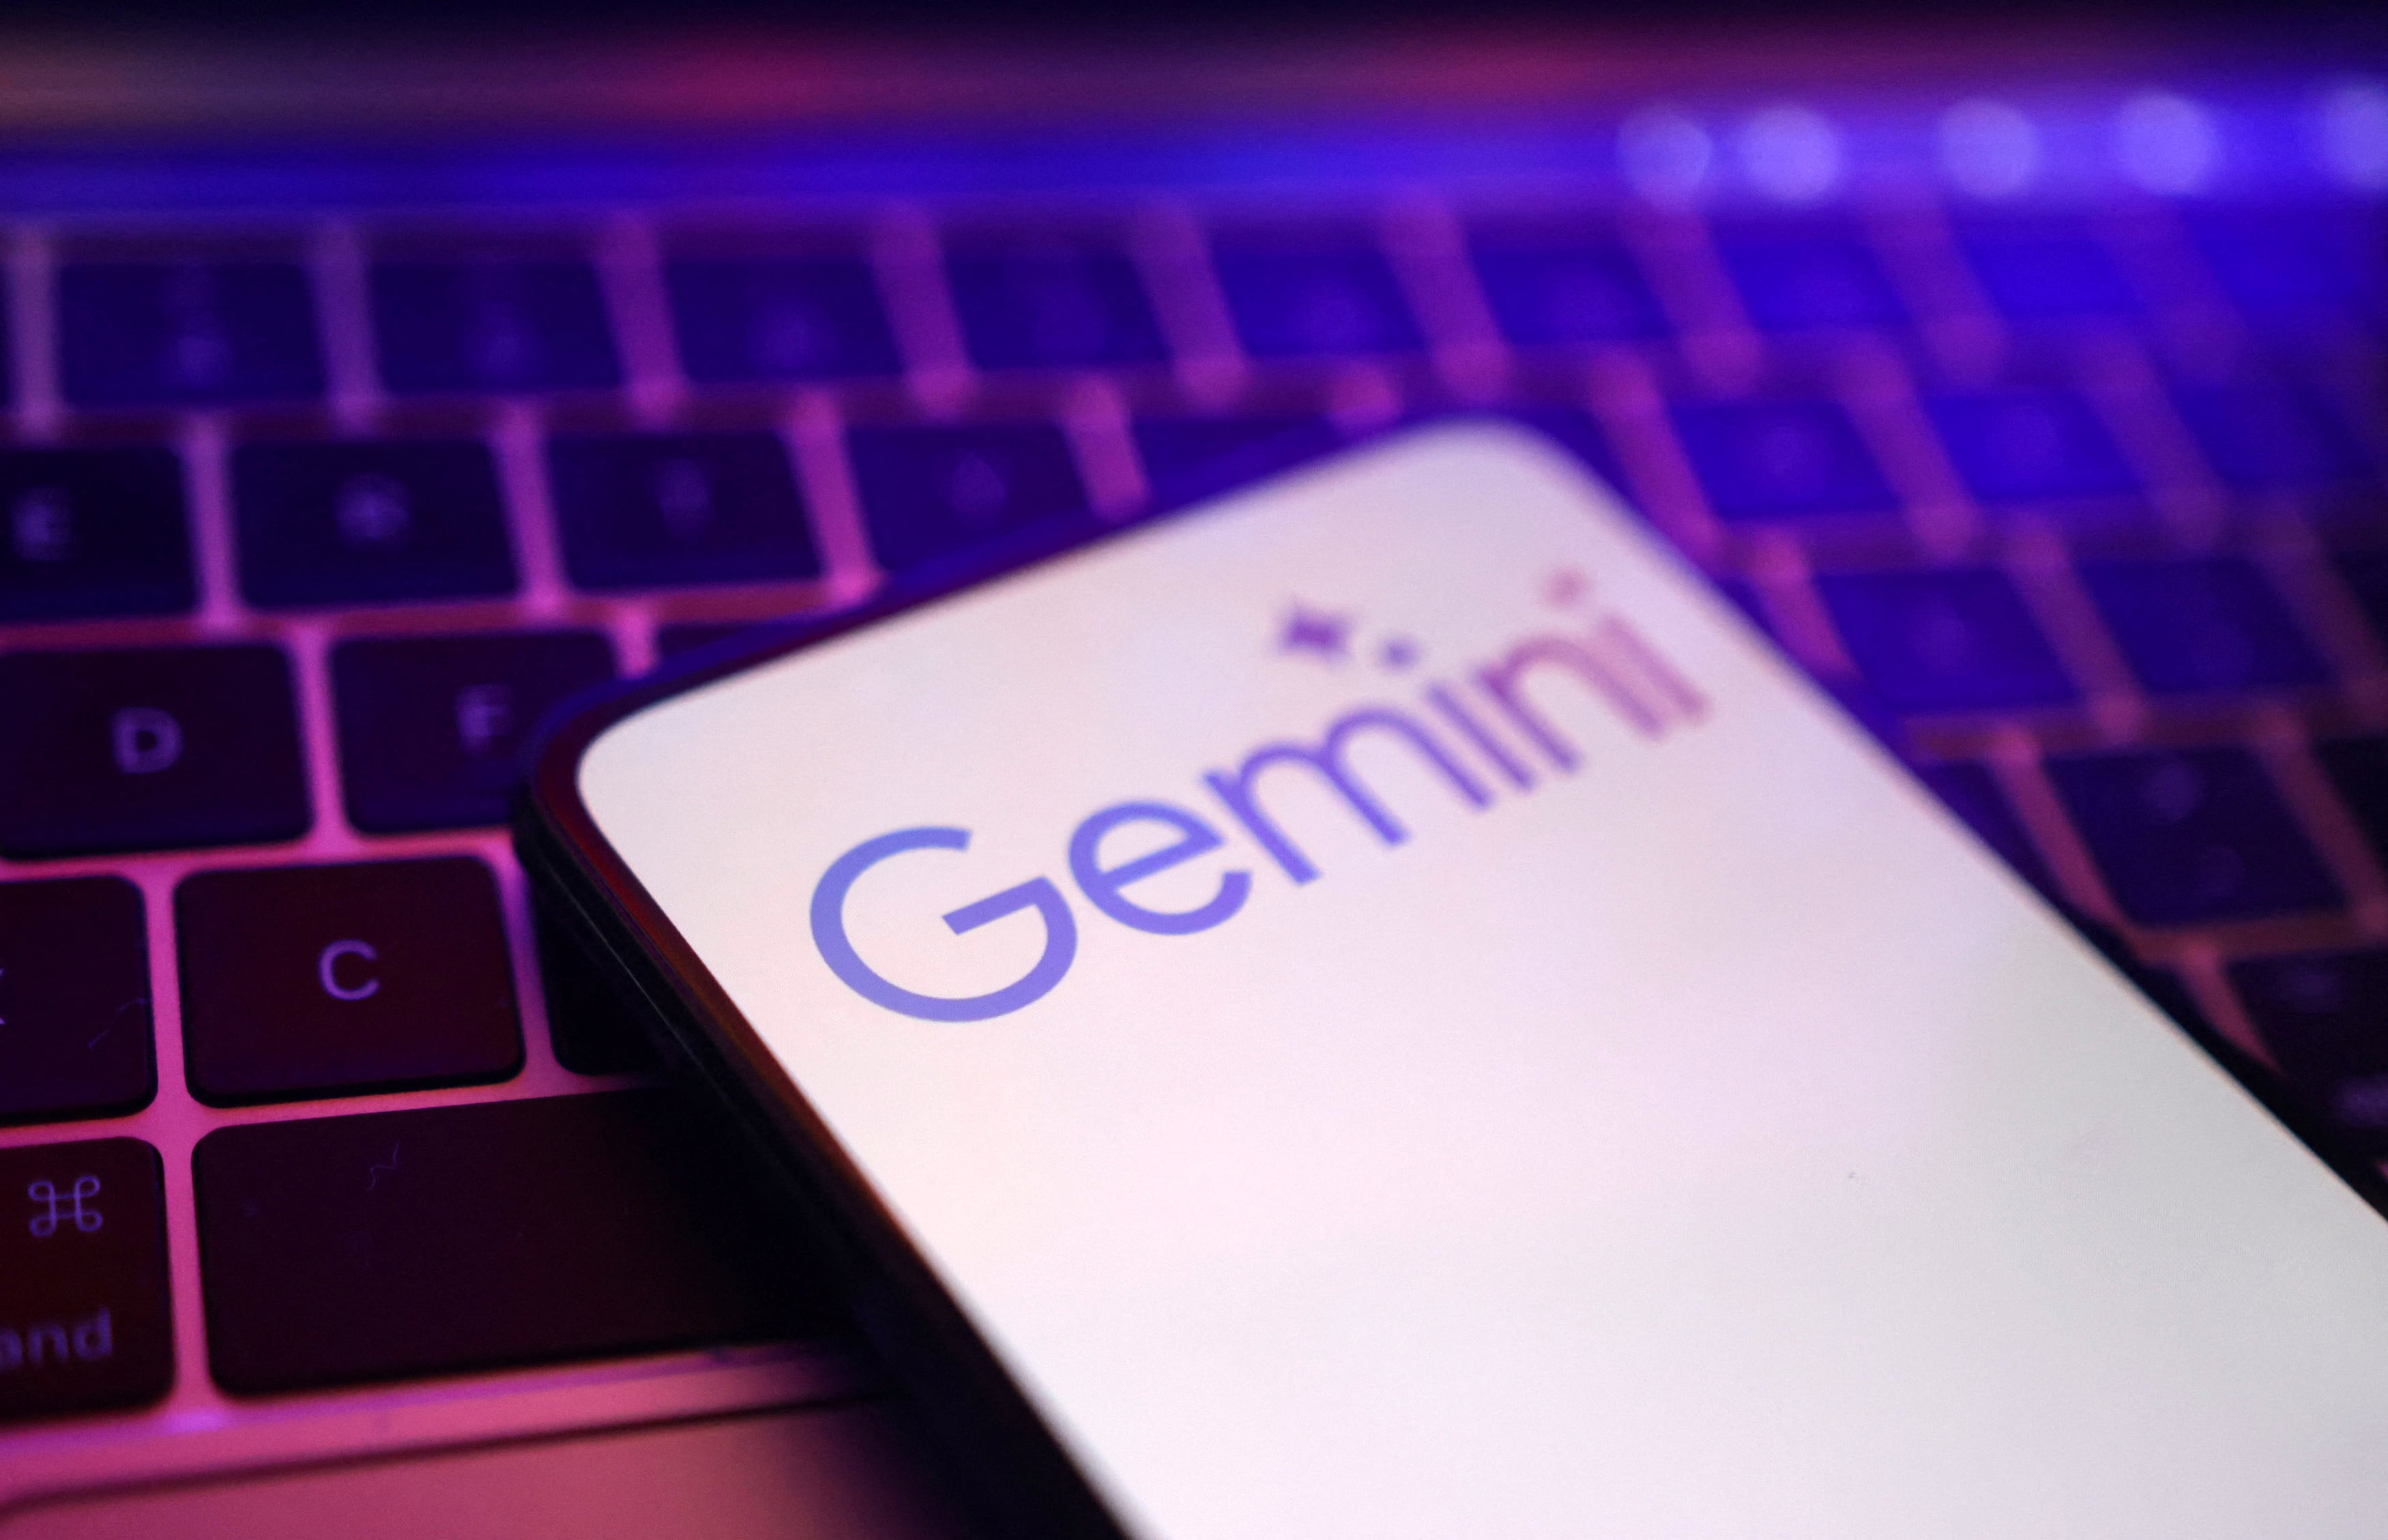 Gemini es el trabajo de Google por competir en este mercado tecnológico emergente. (Foto: REUTERS/Dado Ruvic/Illustration)